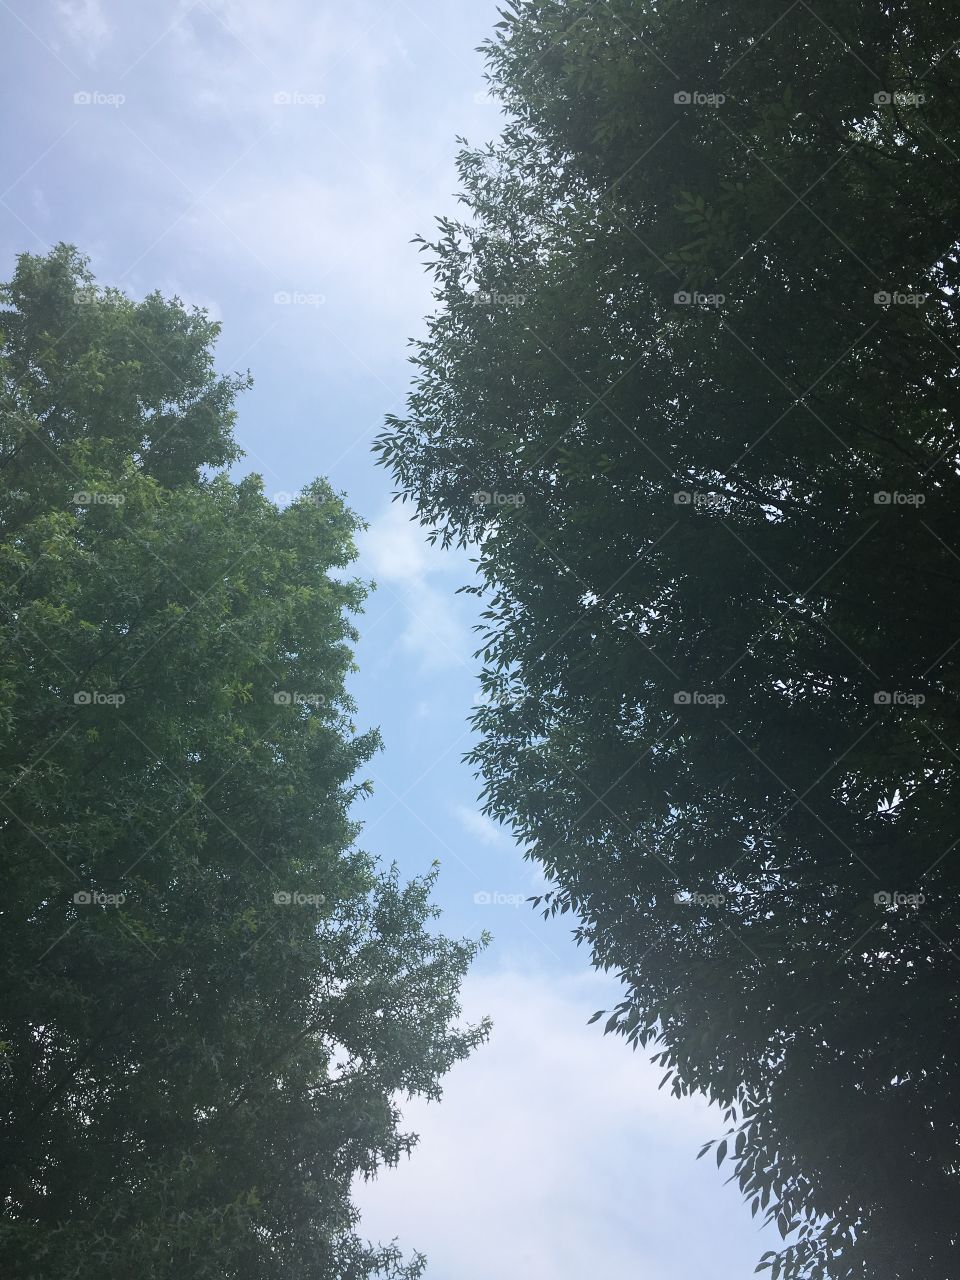 Between trees